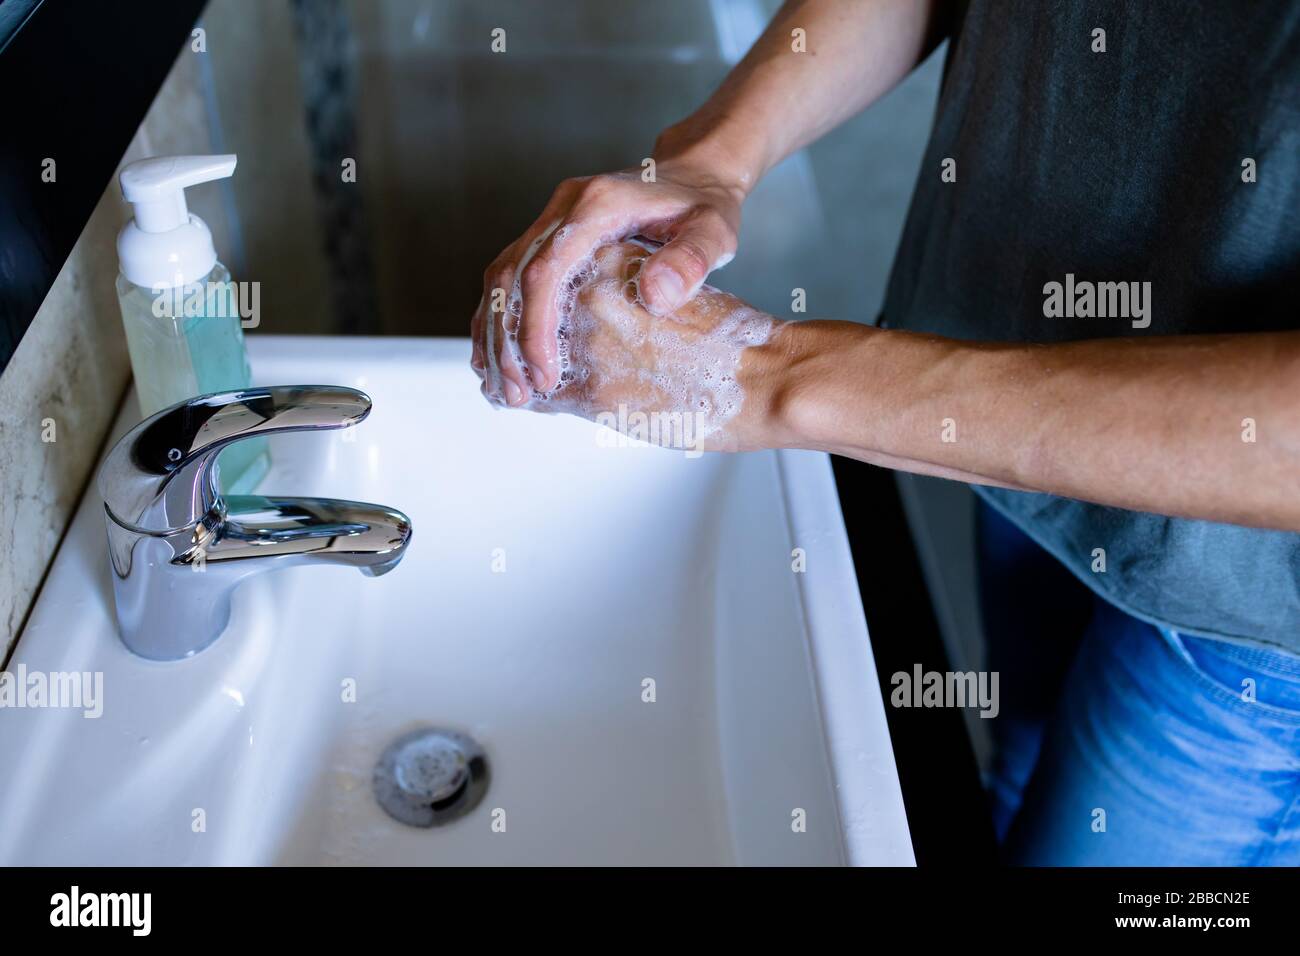 Frau wascht ihre Hände gegen Coronavirus Covid19 Stockfoto